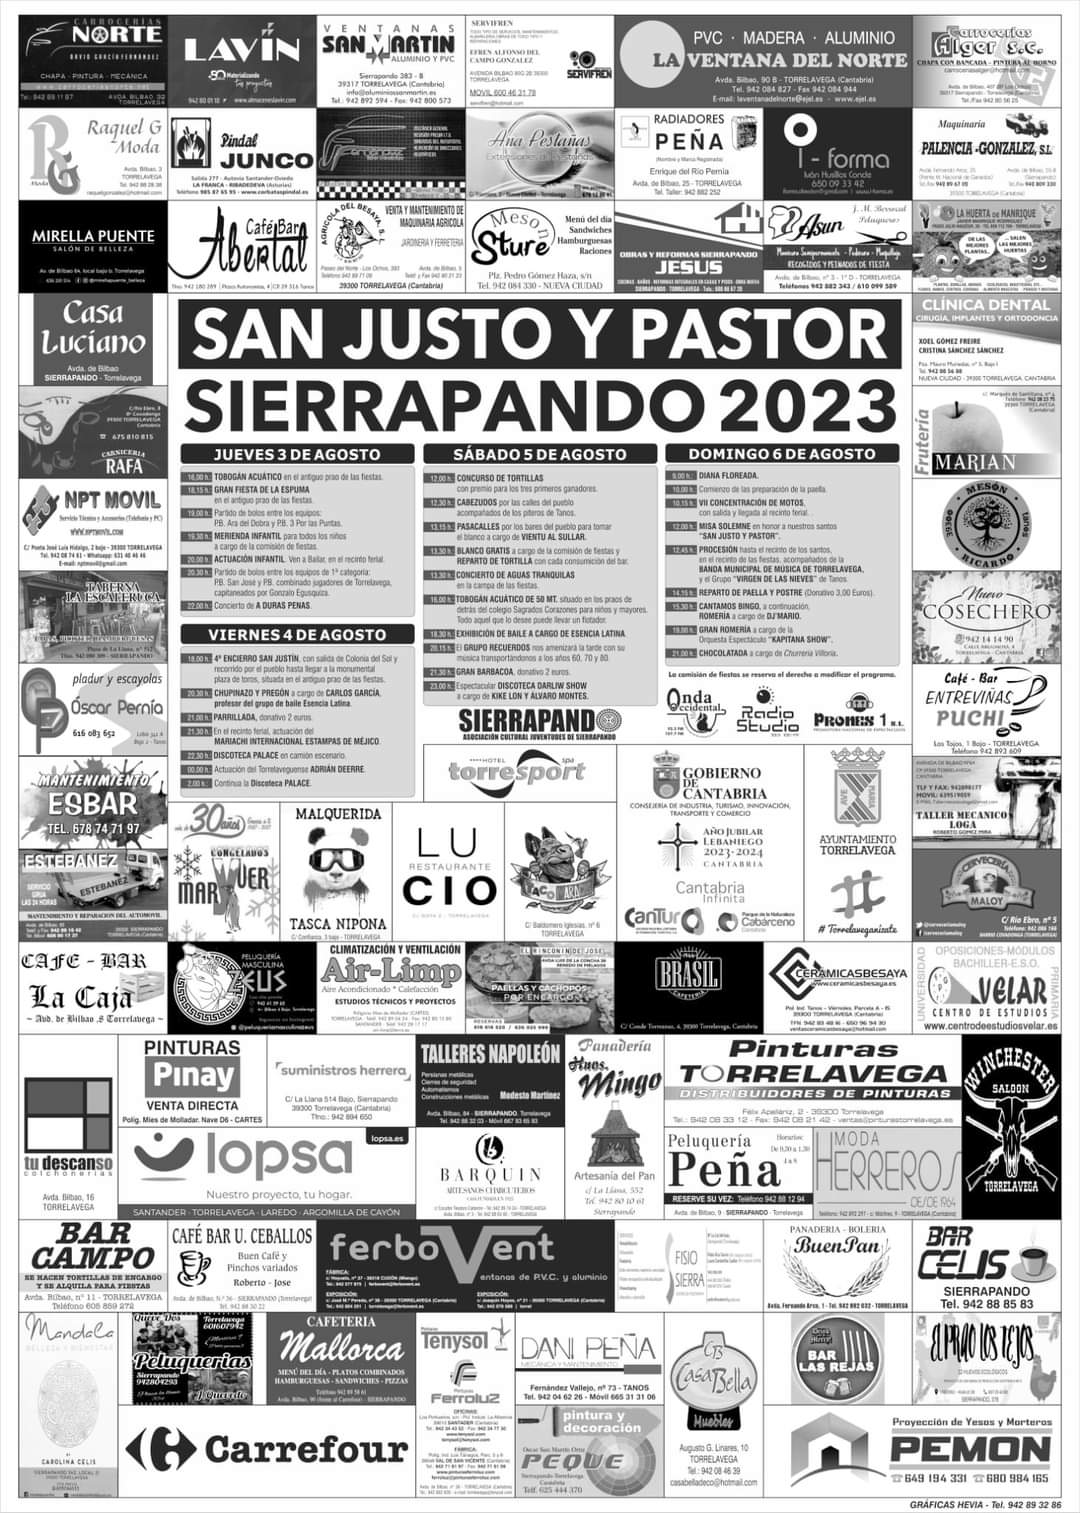 San Justo y Pastor Sierrapando 2023